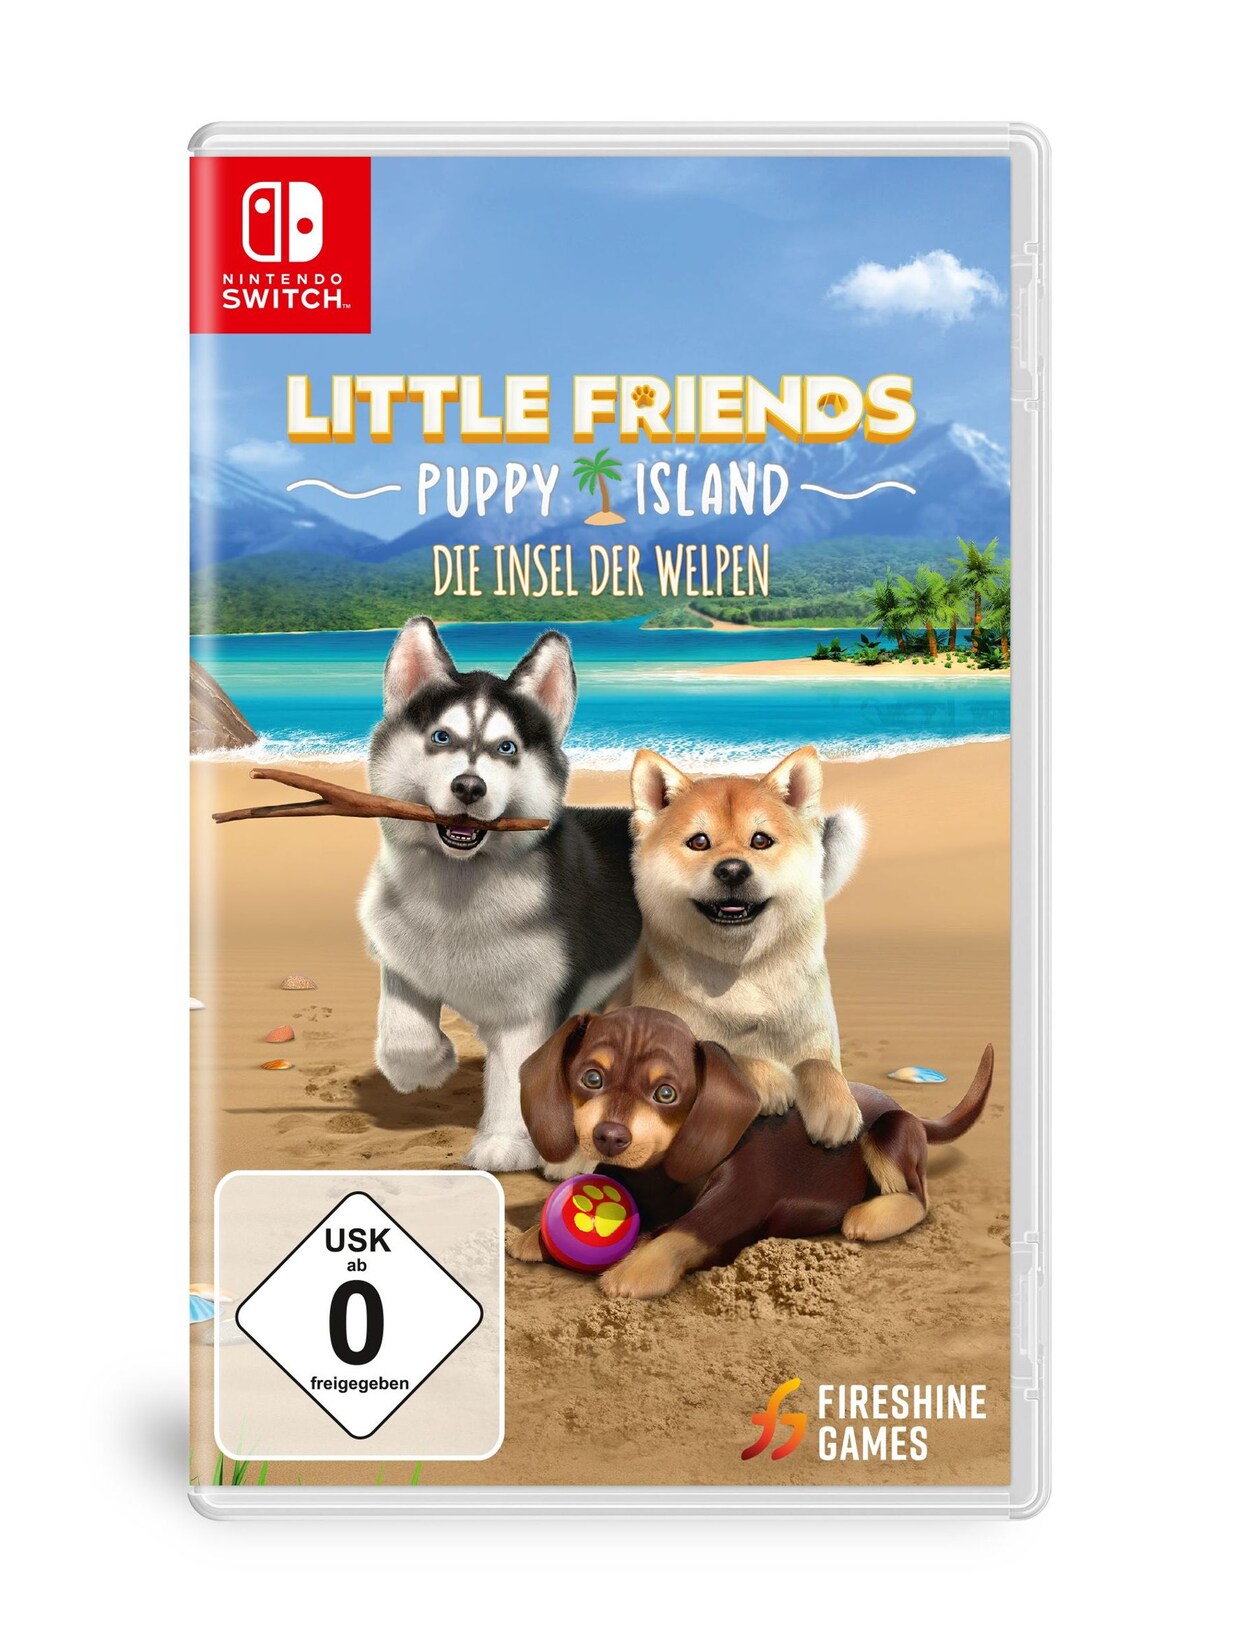 Litlle Friends Puppy Island - Die Insel der Welpen